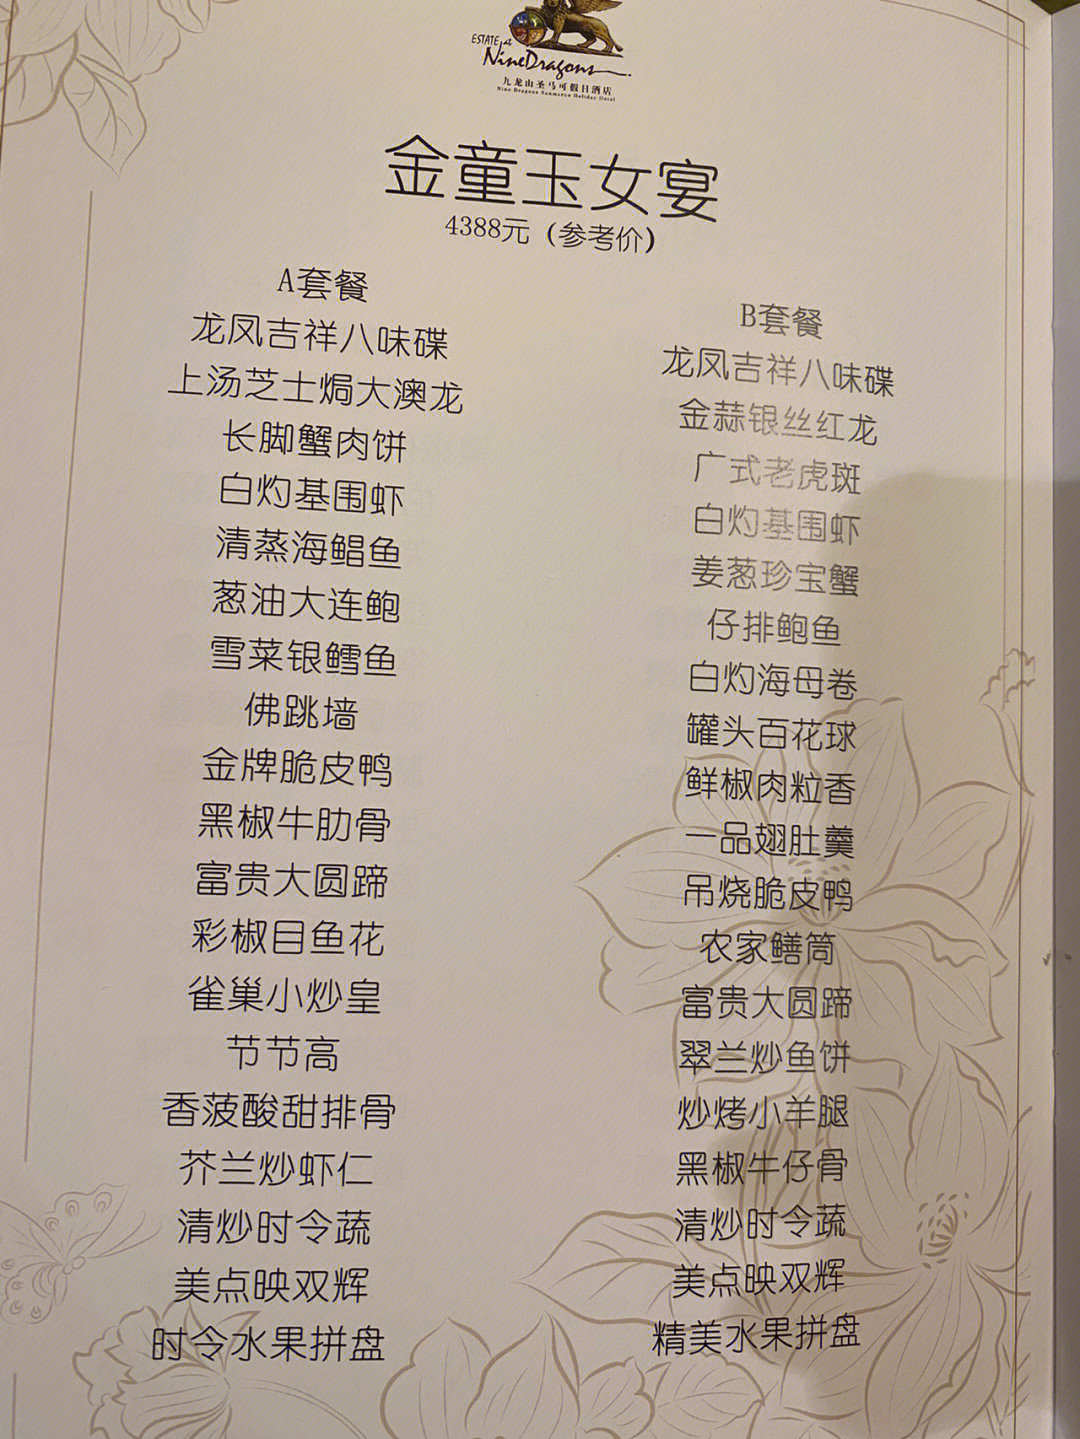 上海婚宴3000一桌菜单图片